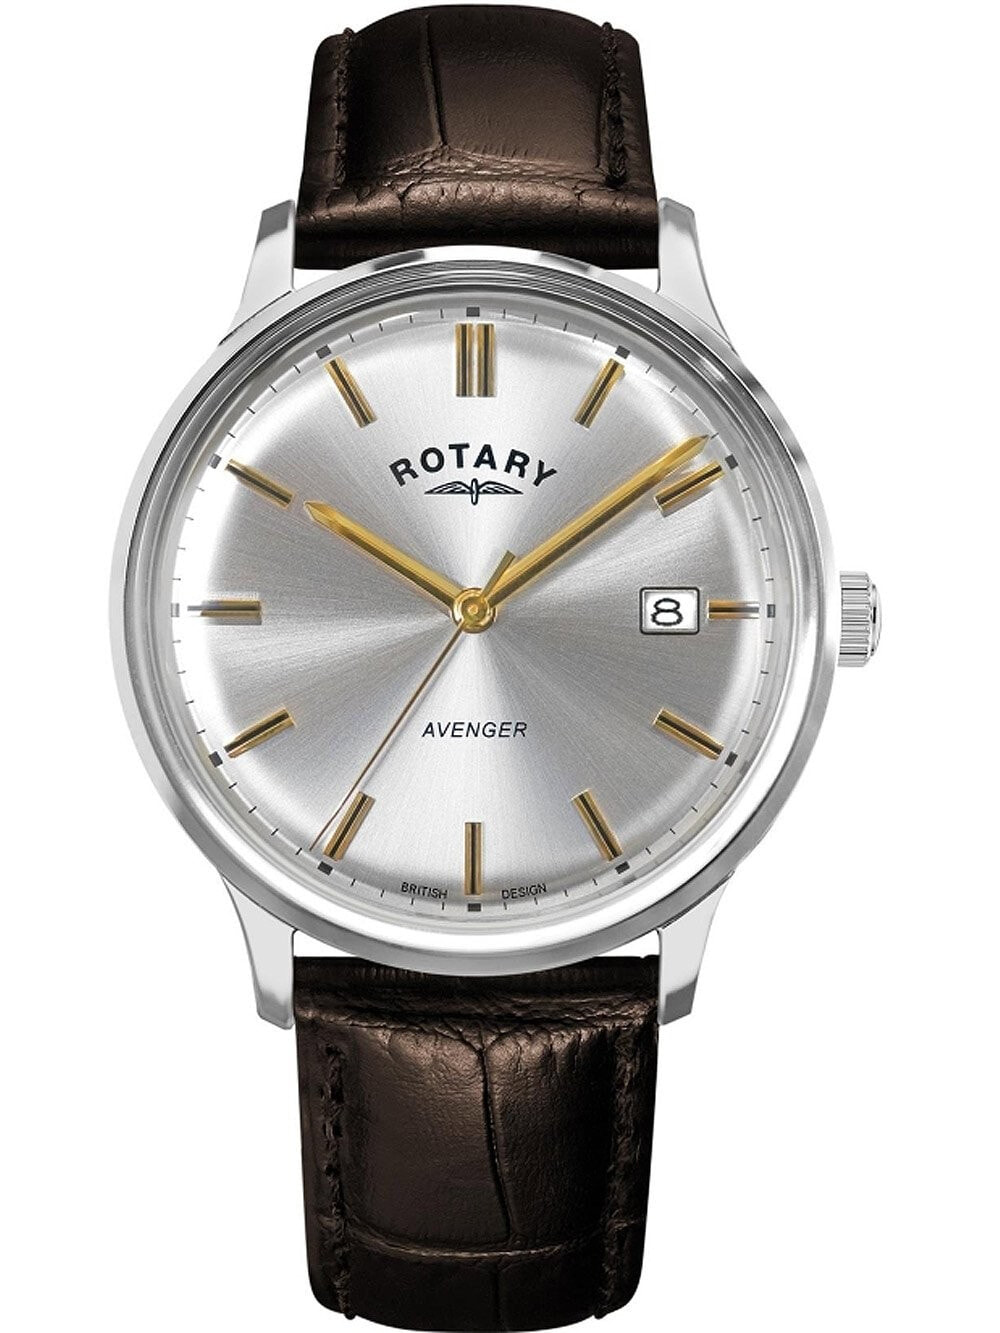 Мужские наручные часы с коричневым кожаным ремешком Rotary GS05400/06 Avenger mens 36mm 5ATM